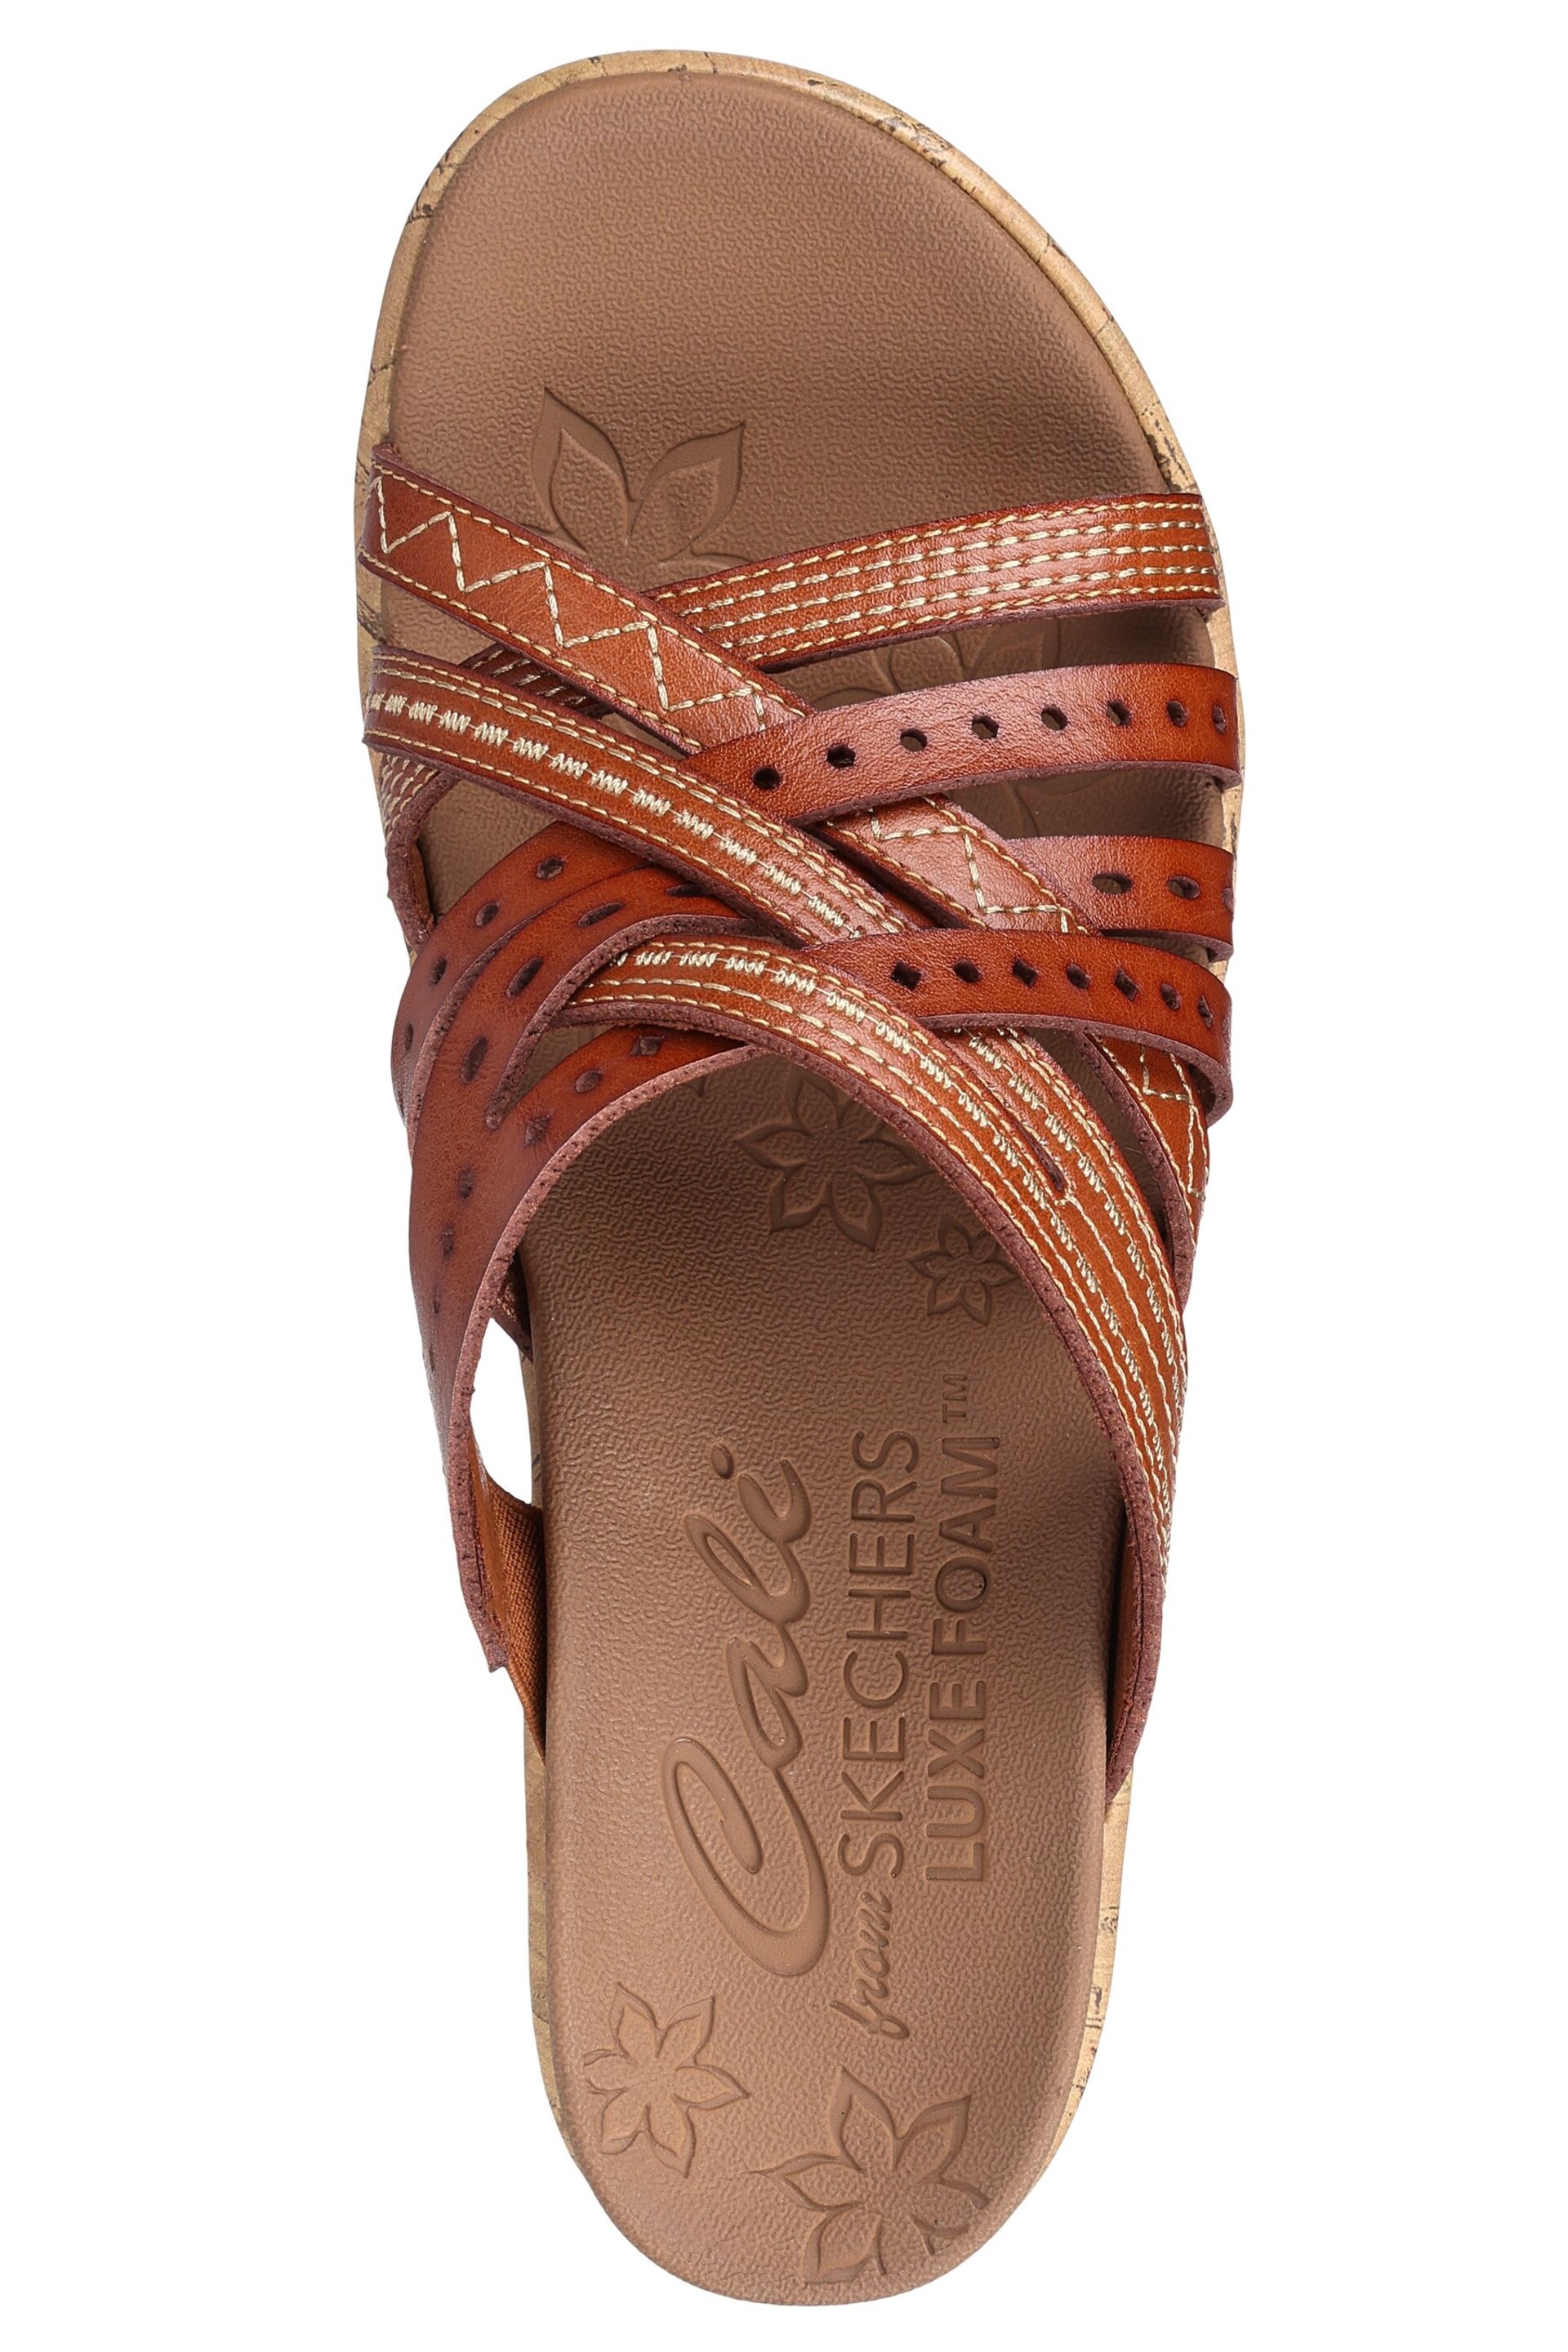 Skechers Brown Beverlee Hot Spring Sandals - Image 4 of 5